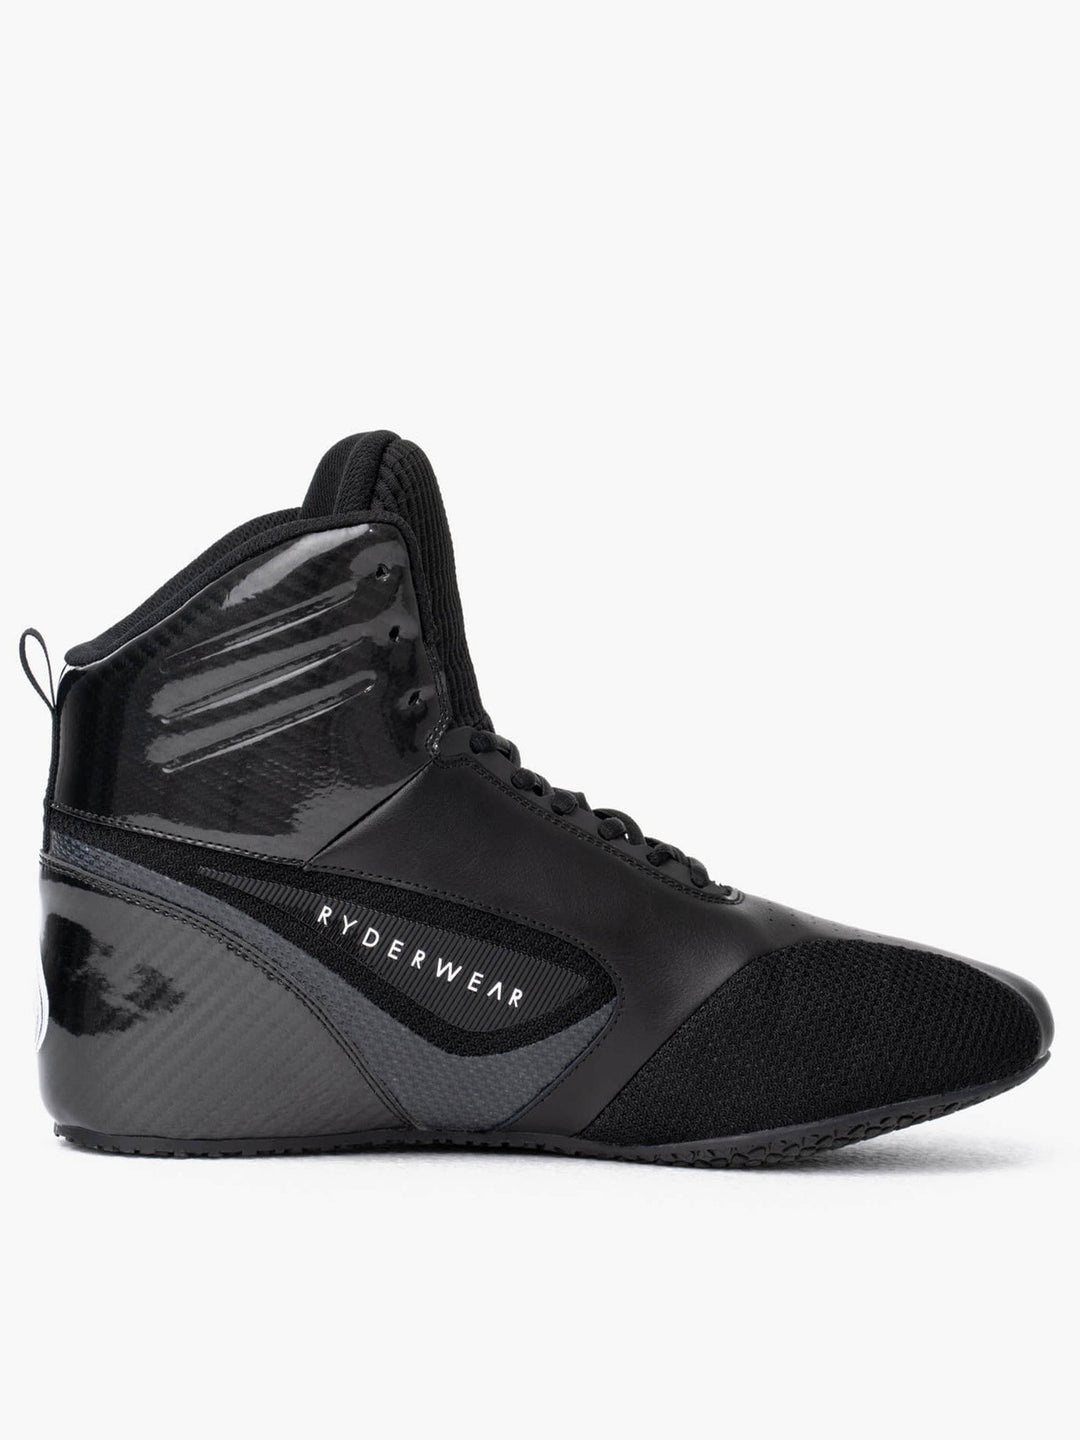 D-Mak Carbon Fibre - Black Shoes Ryderwear 